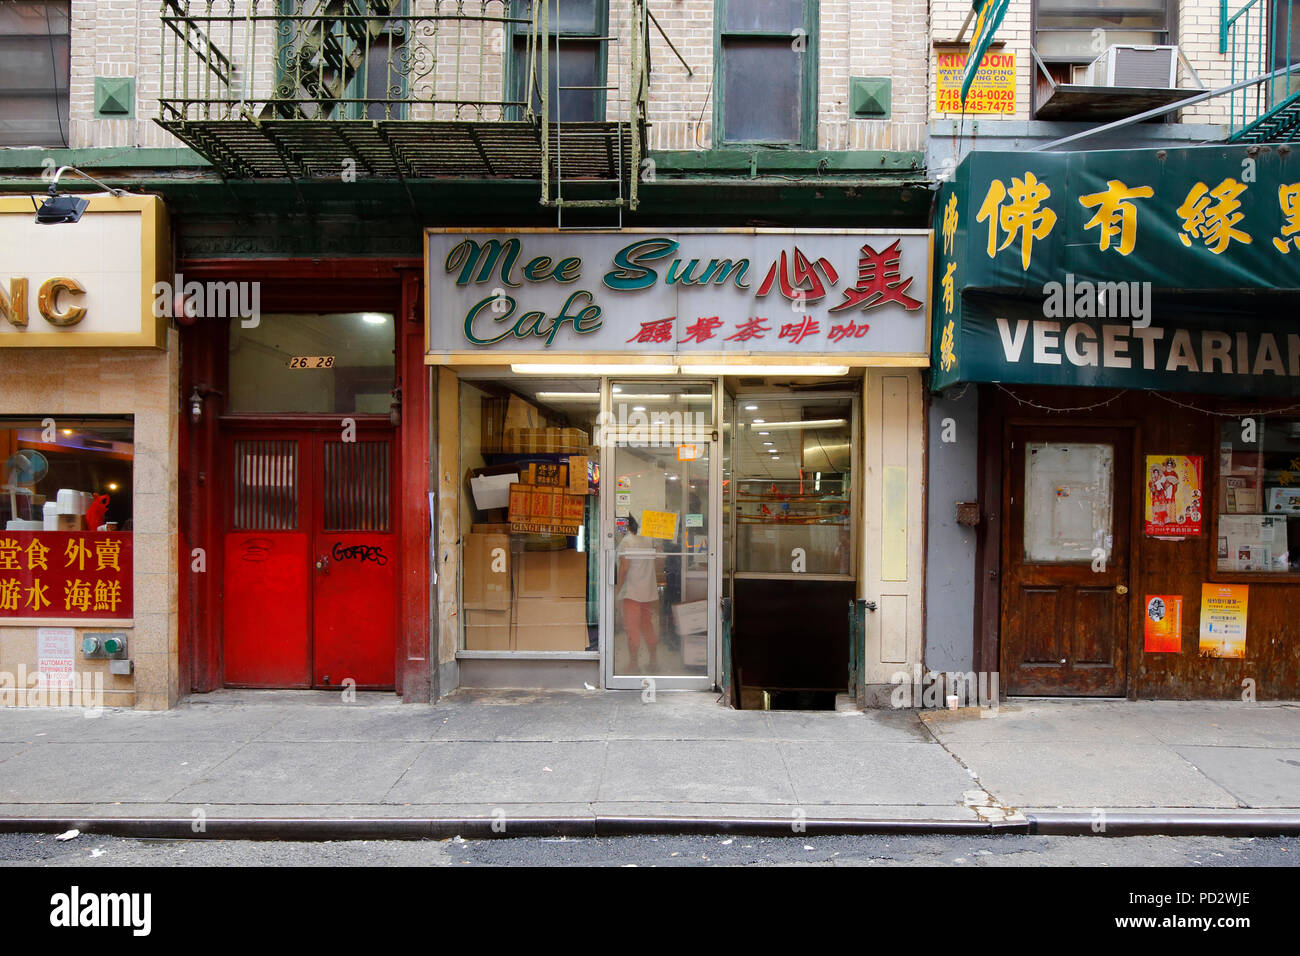 Mee Sum Cafe 美心, 26 Pell St, New York, NY. Façade extérieure d'un café dans le quartier chinois de Manhattan. Banque D'Images